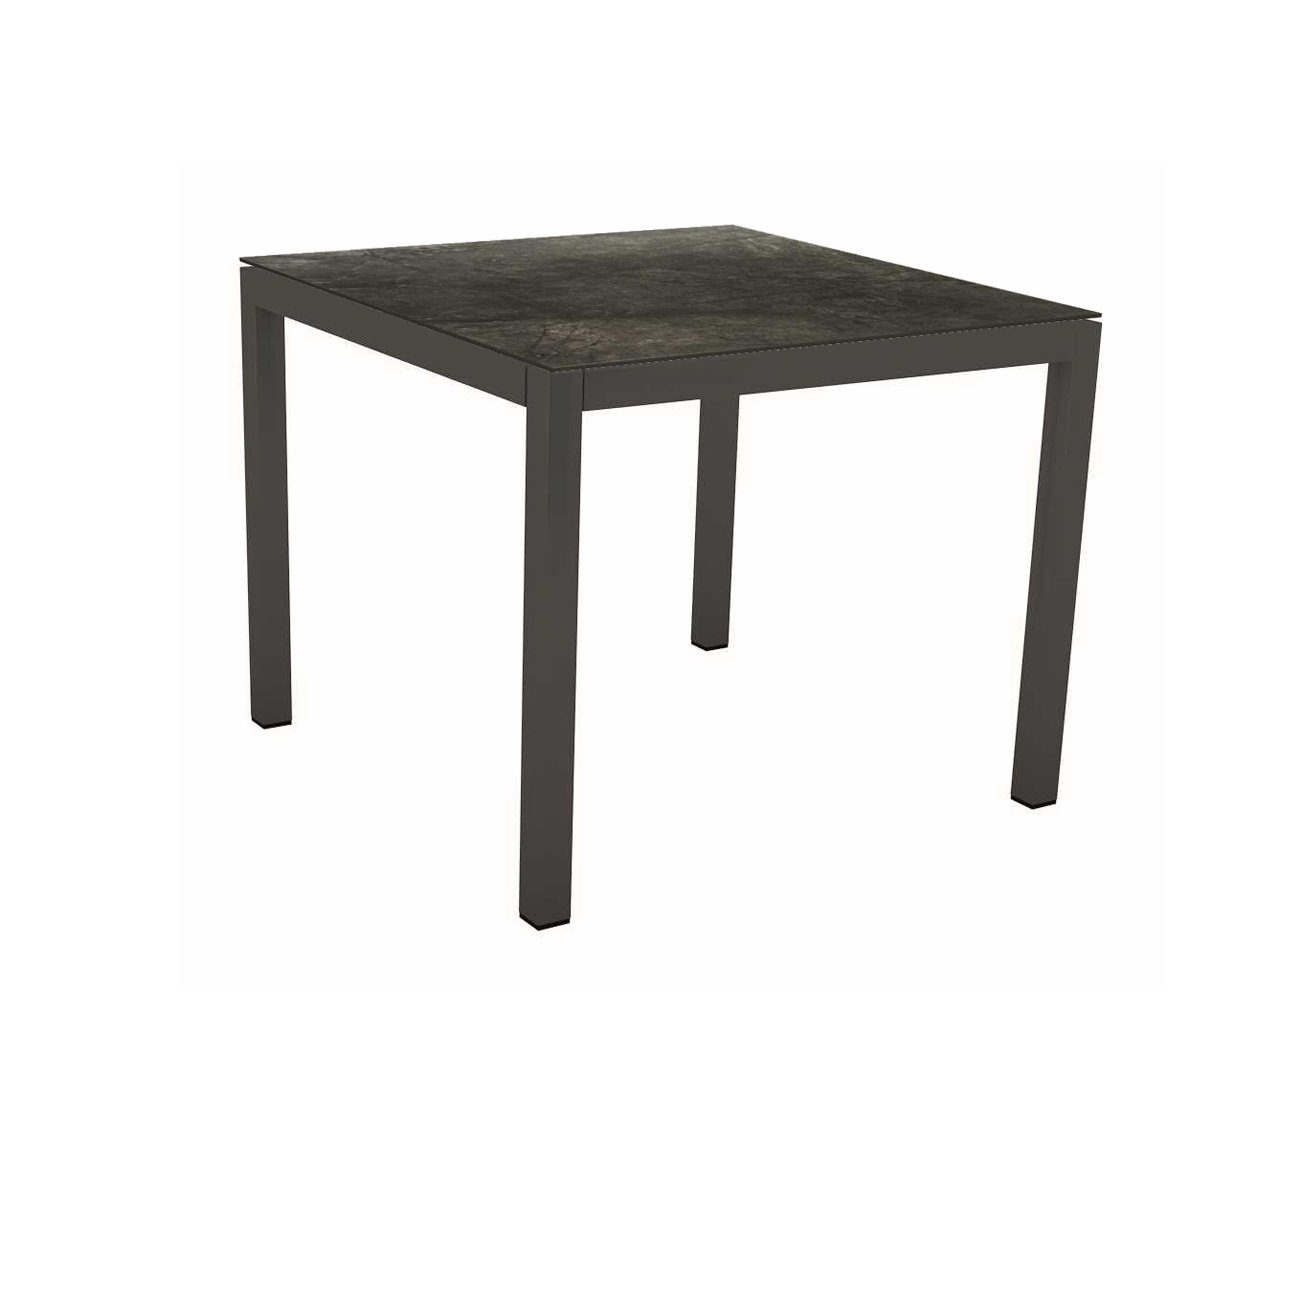 Stern Tischsystem Gartentisch, Gestell Aluminium anthrazit, Tischplatte HPL Dark Marble, Maße: 90x90 cm